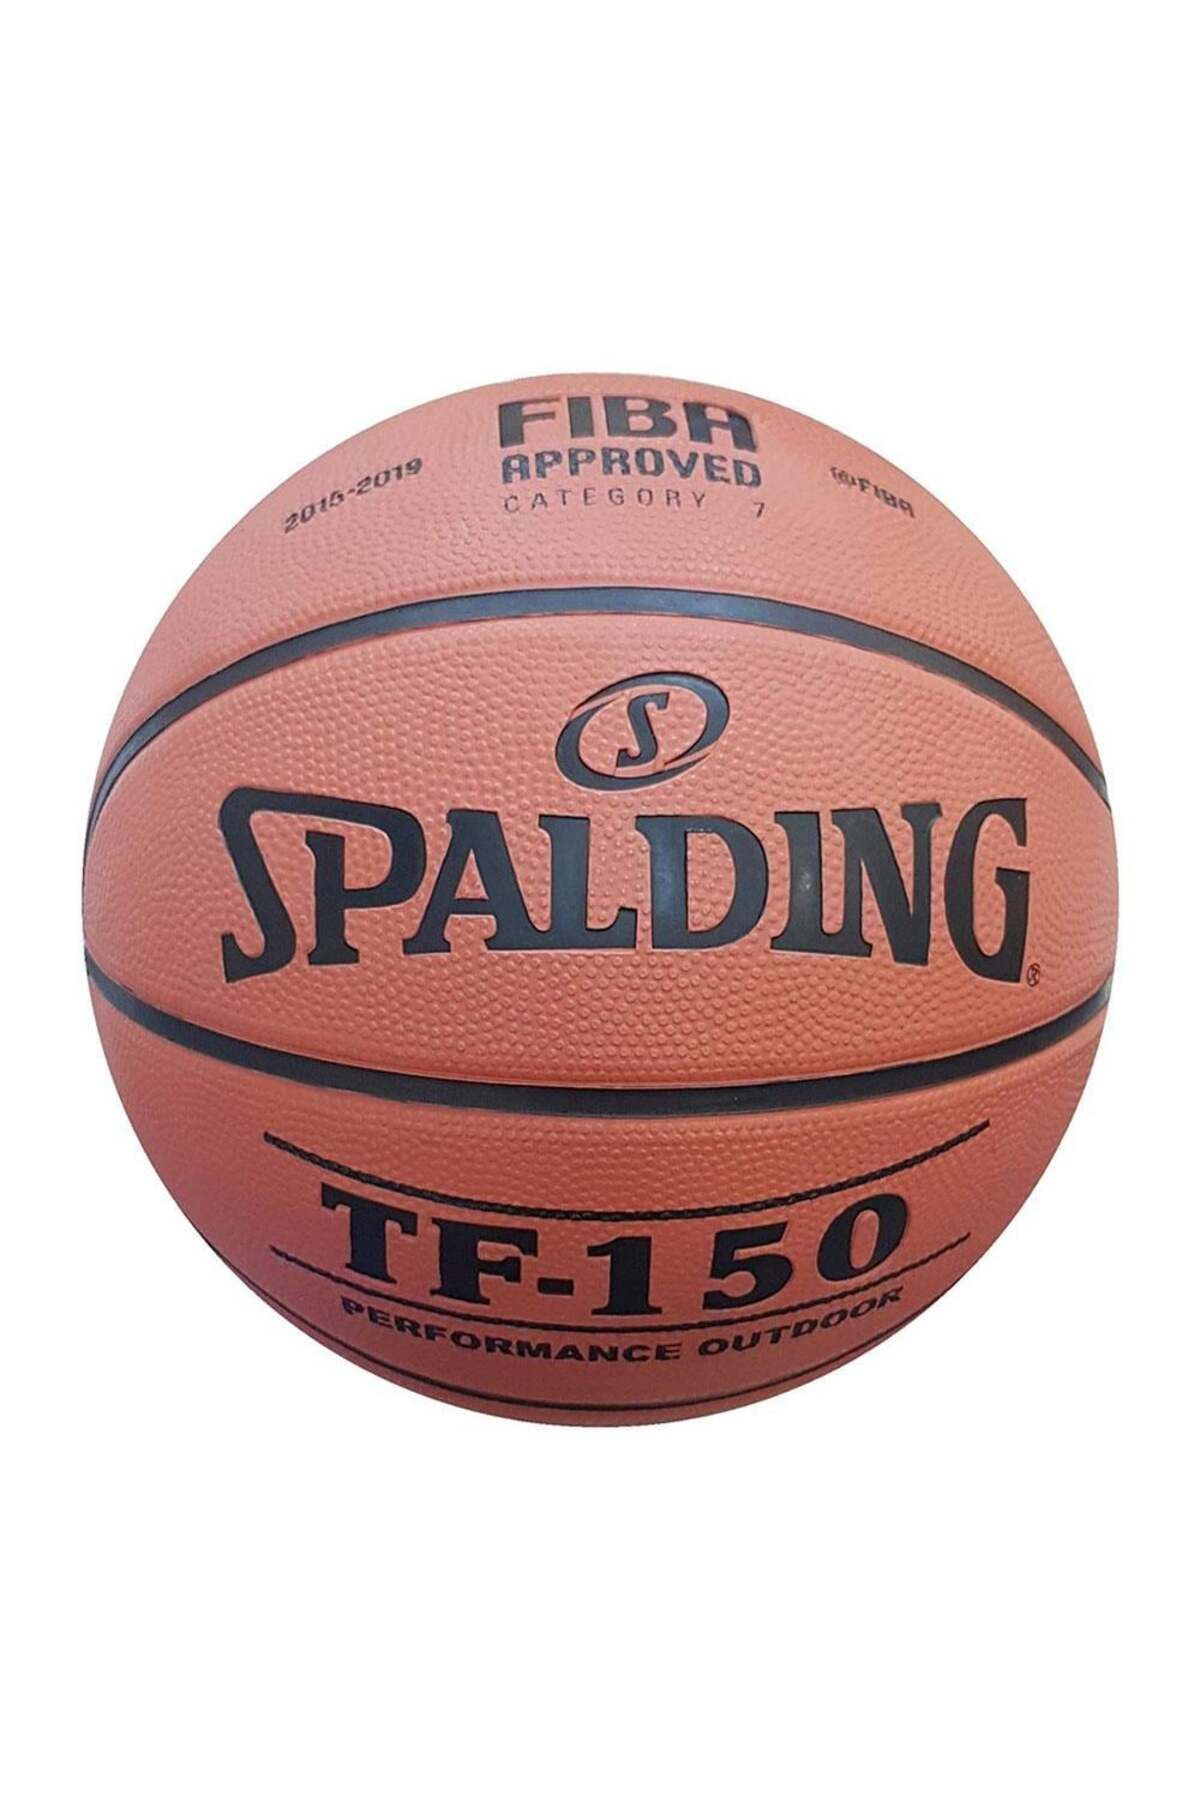 Spalding Basketbol Topu Tf150